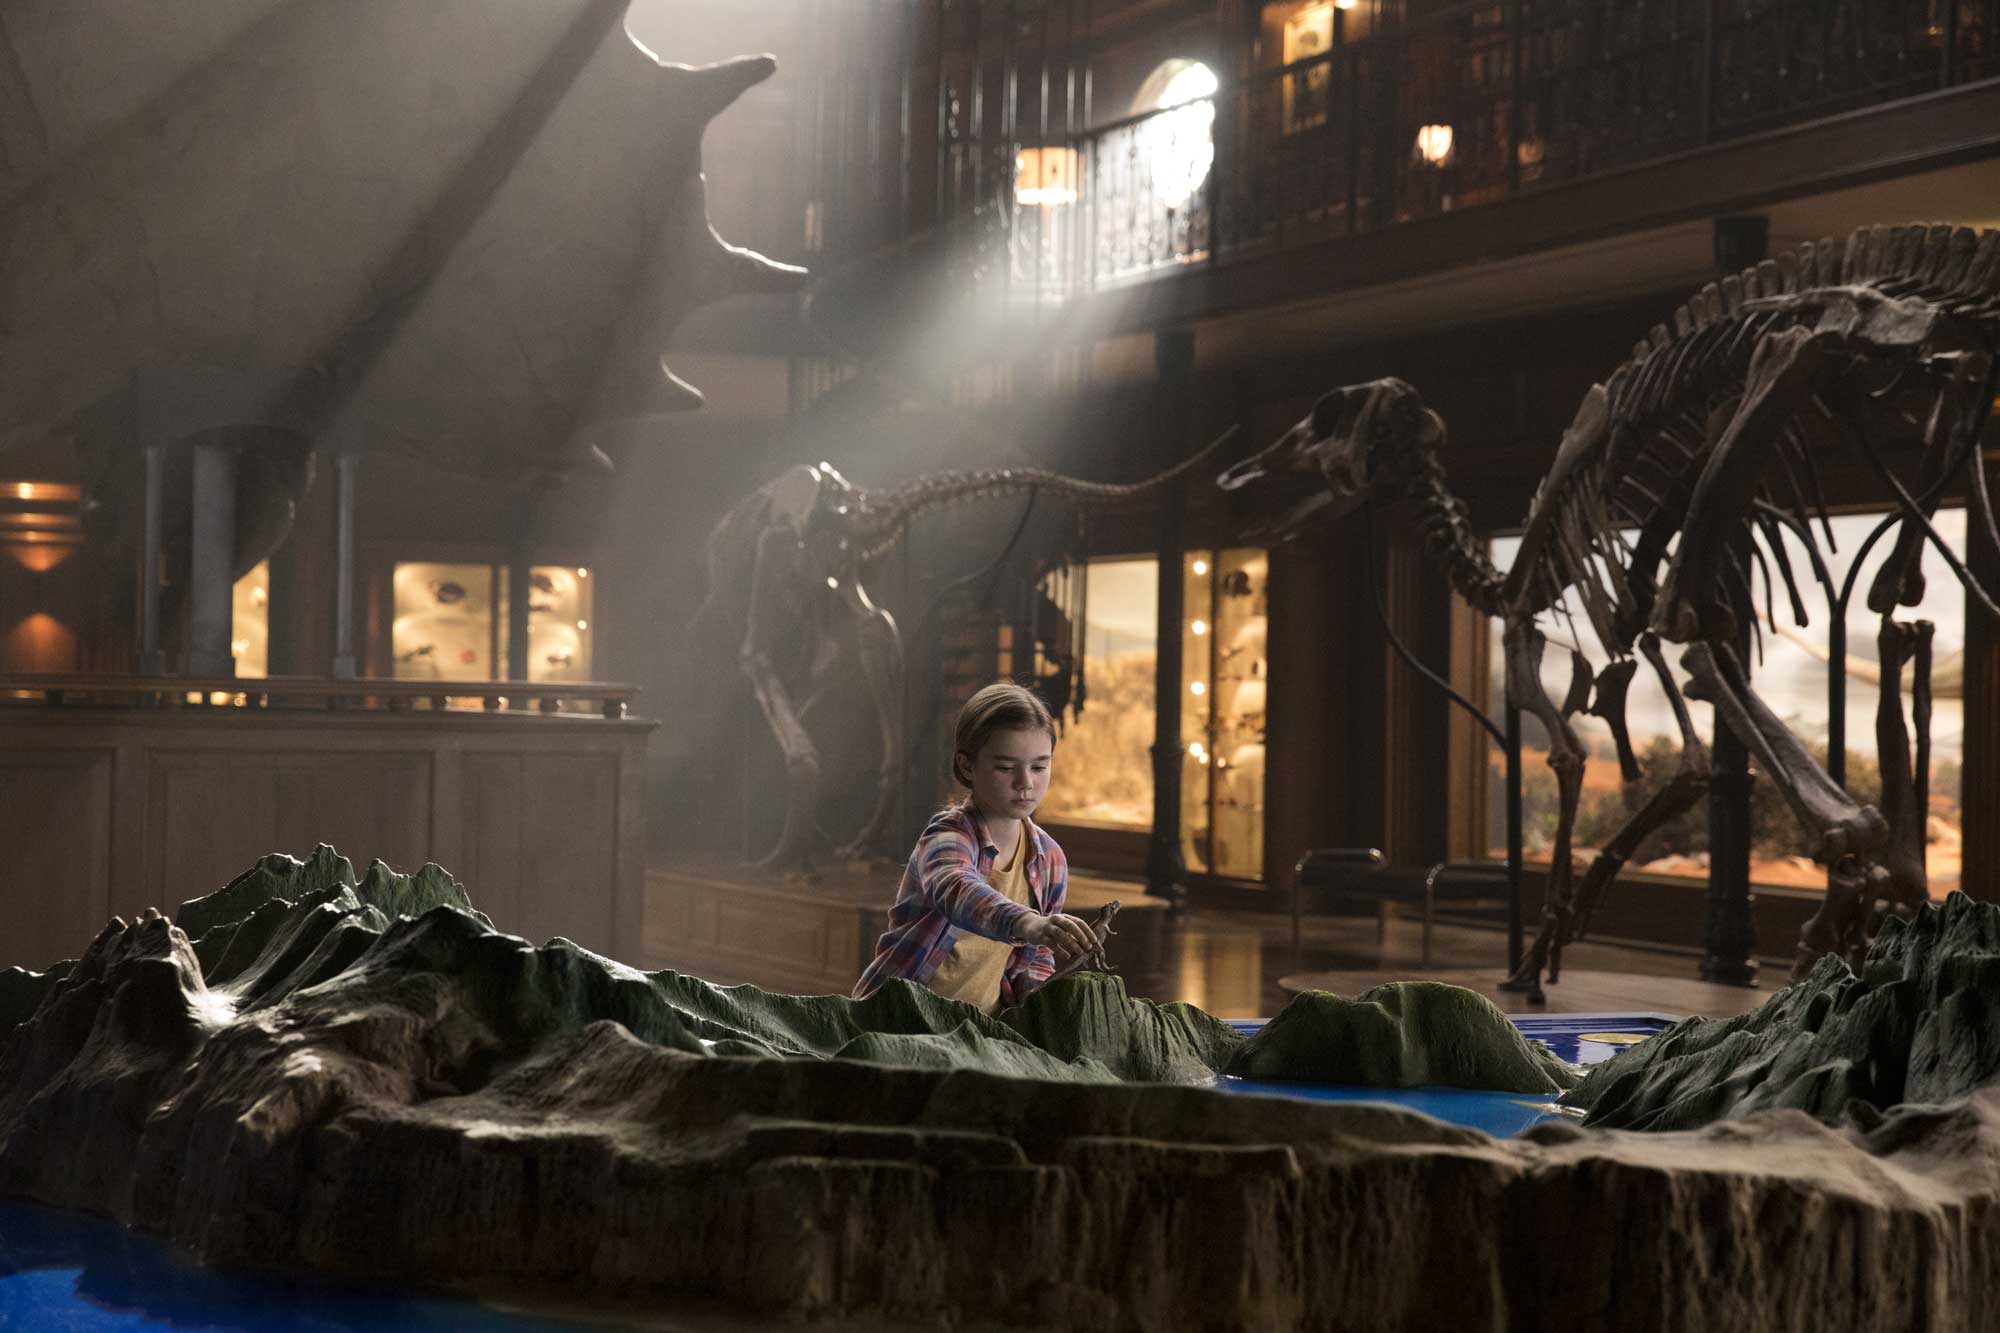 1993 年，史提芬史匹堡（Steven Spielberg）執導的《侏羅紀公園》（Jurassic Park）上畫，栩栩如生的數碼特技令恐龍「復活」，掀起當時的恐龍熱，也令當時的小朋友學習又長又難讀的恐龍英文名，集官能刺激與教育意味於一身，是非常難得的商業娛樂作品。